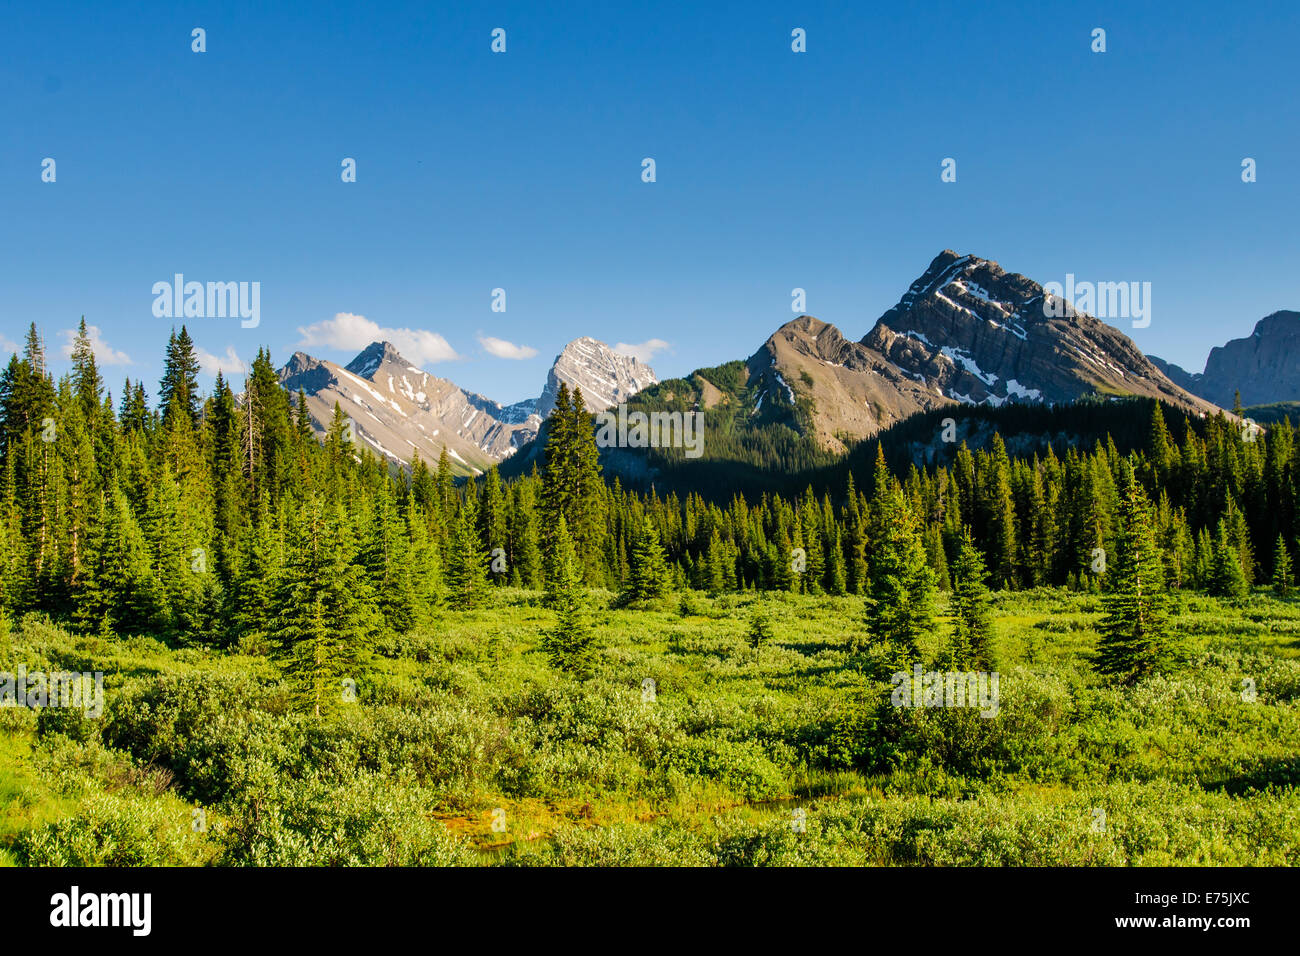 Malerische Berge im Sommer, Kananaskis Country Alberta Kanada Stockfoto